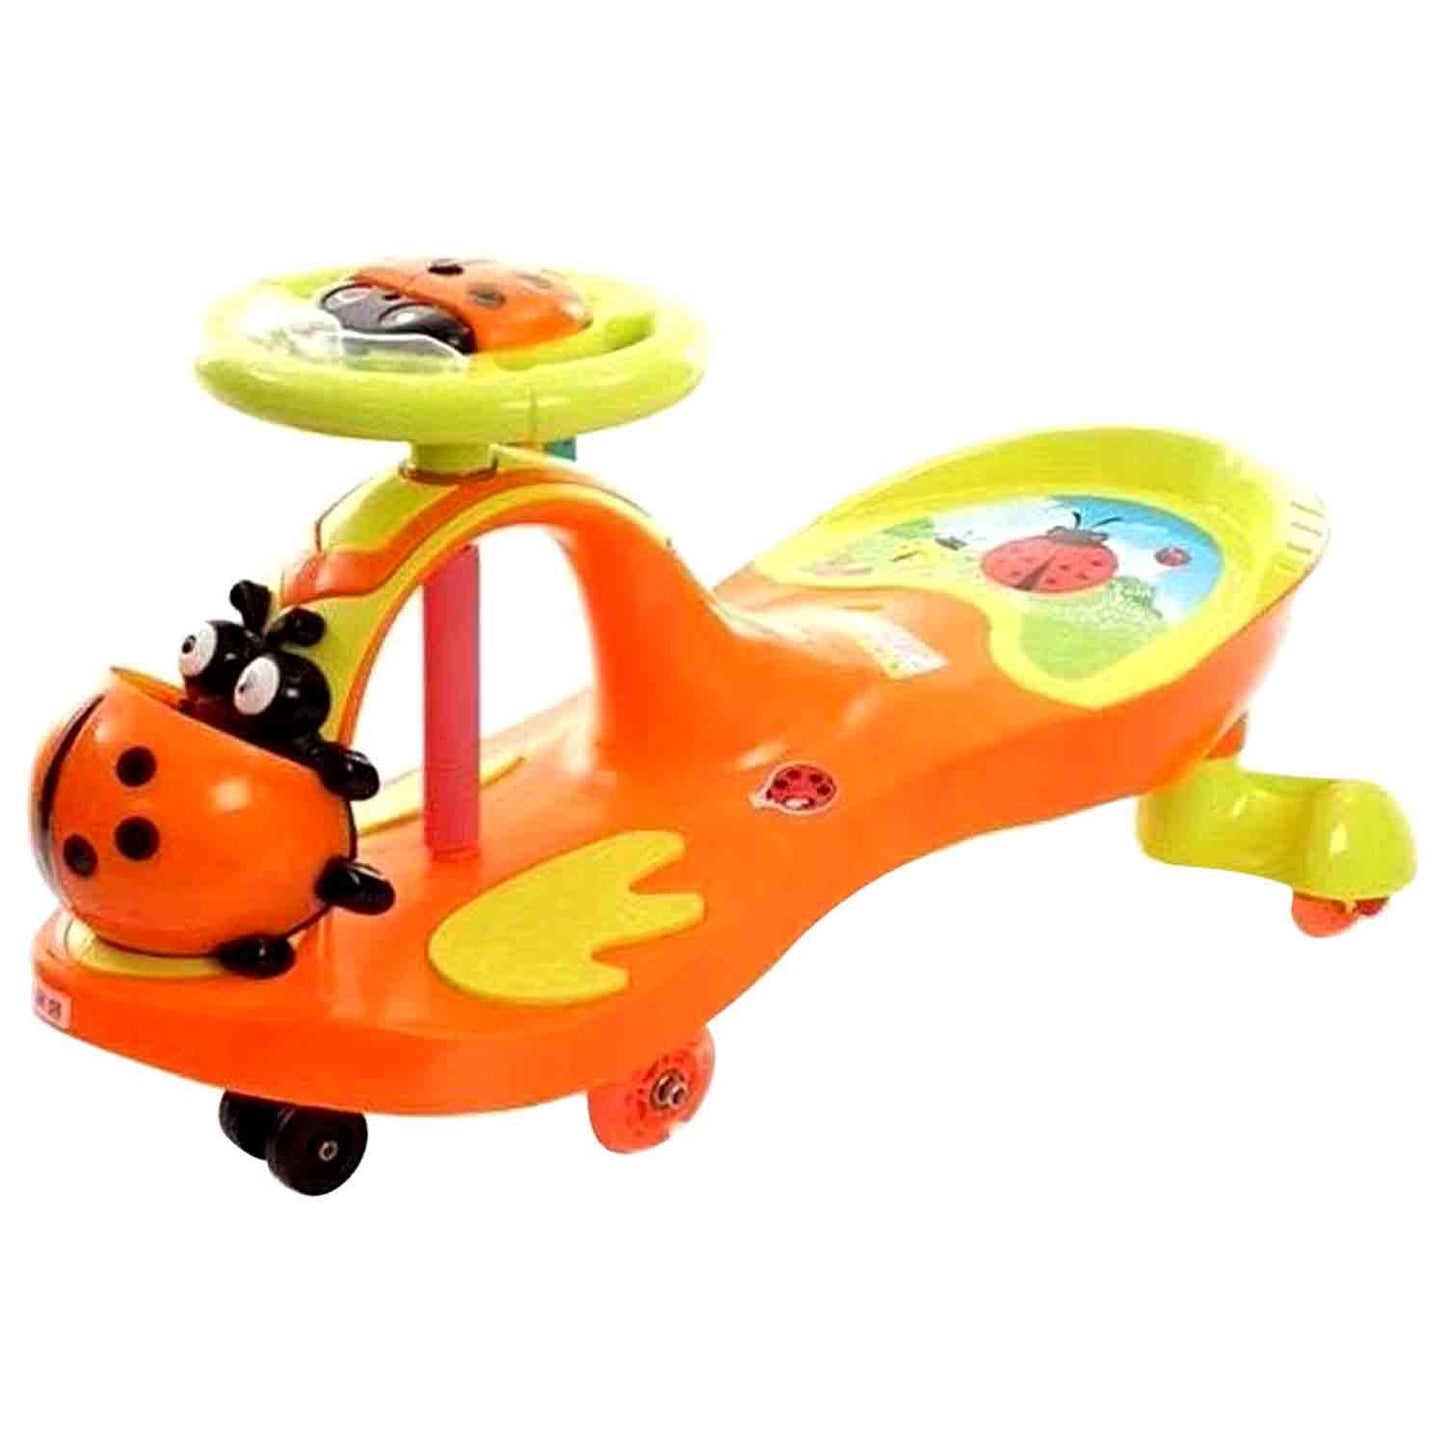 Ladybug Swing Car(Without Packing)